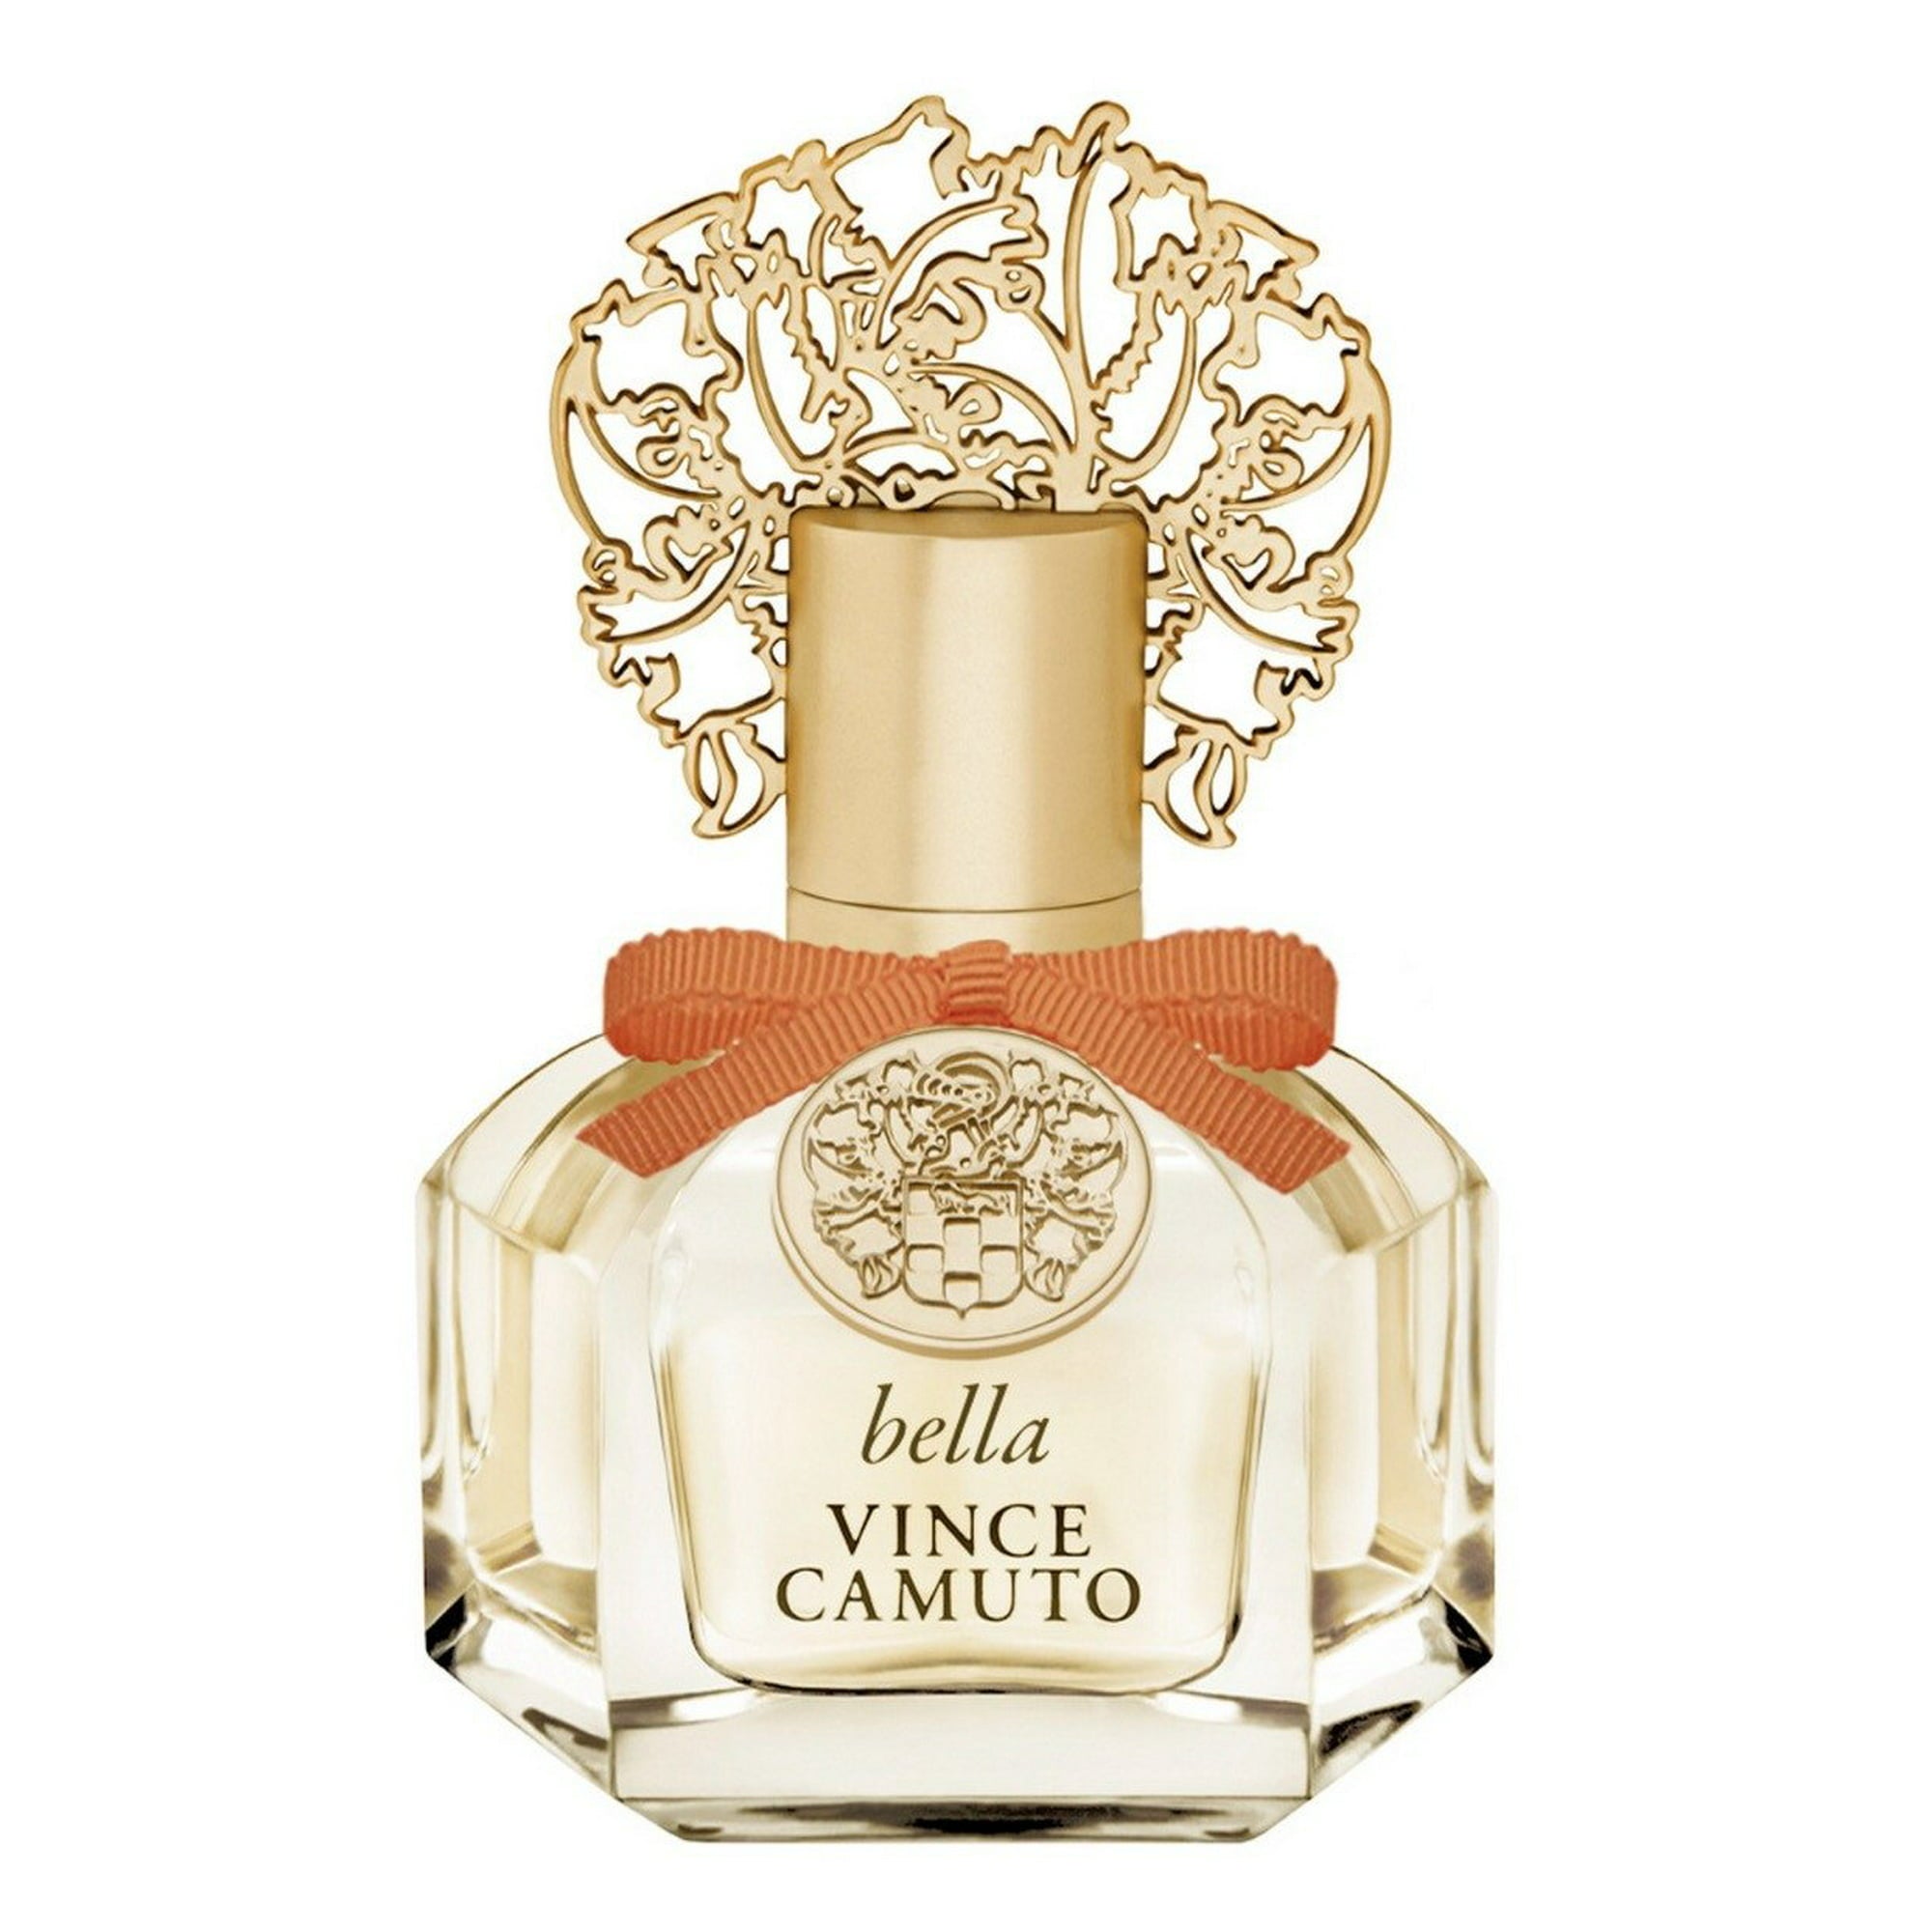 Fiori by Vince Camuto Eau de Parfum 3.4 fl oz/100 ml – The Perfume Shoppe 99